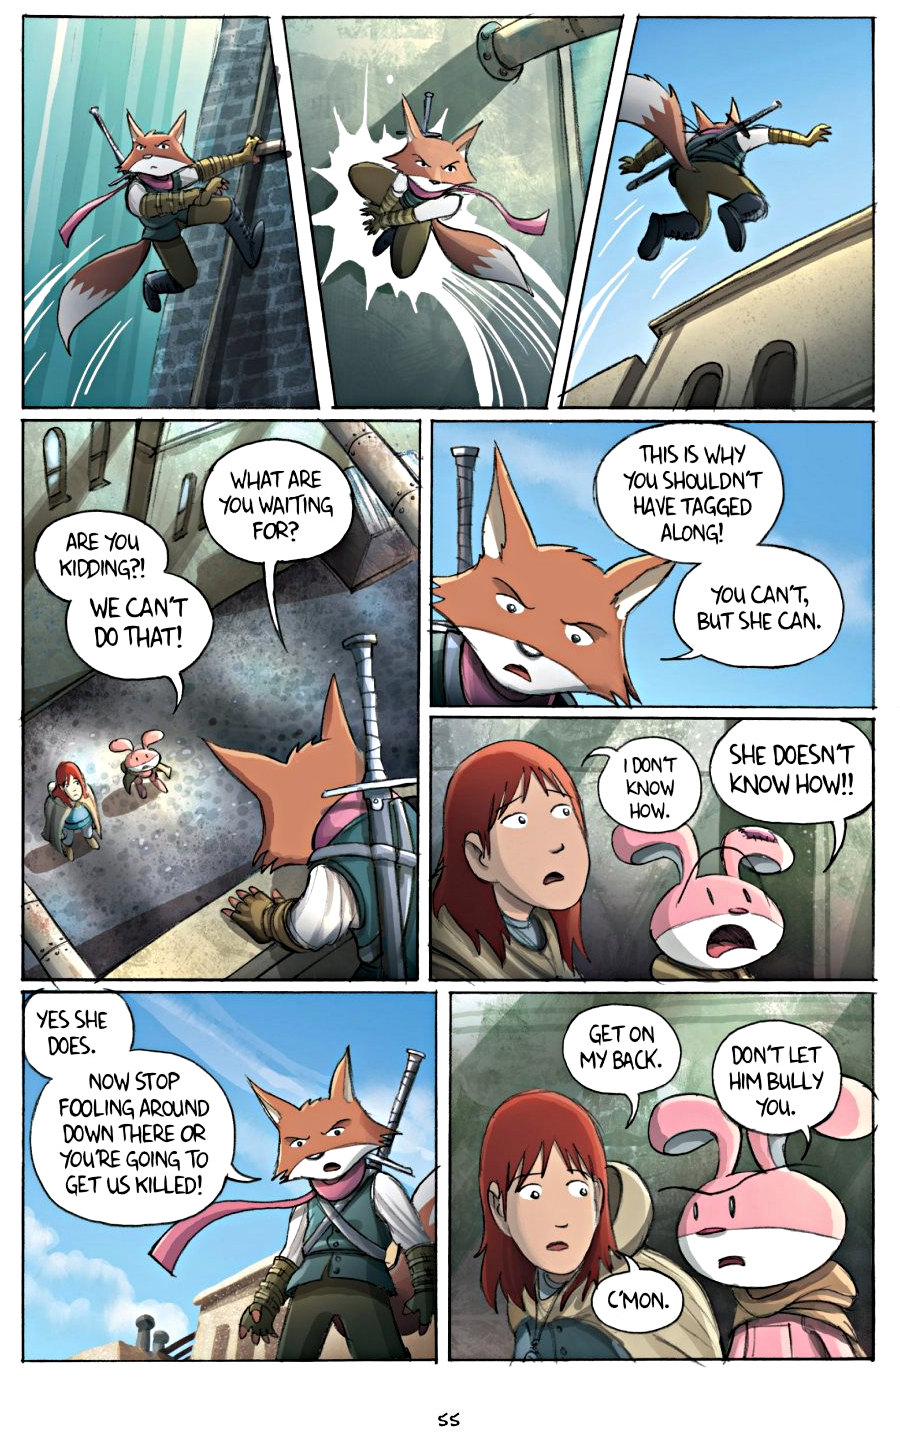 page 55 of amulet 2 stonekeeper's curse graphic novel by kazu kibuishi